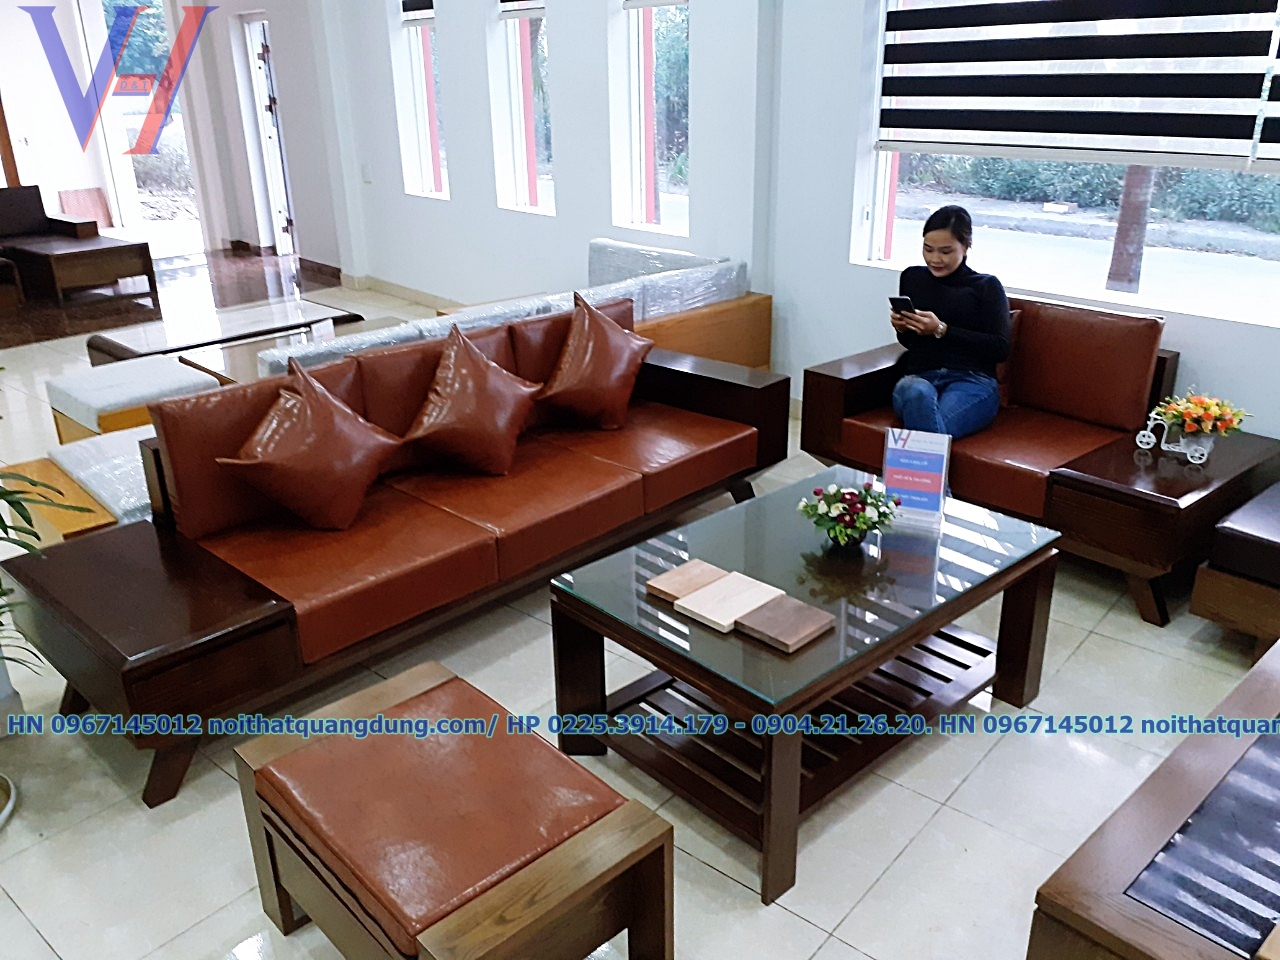 Bộ Sofa Gỗ 2 Văng Đệm Dày Tại Nội Thất Quang Dũng Hải Phòng